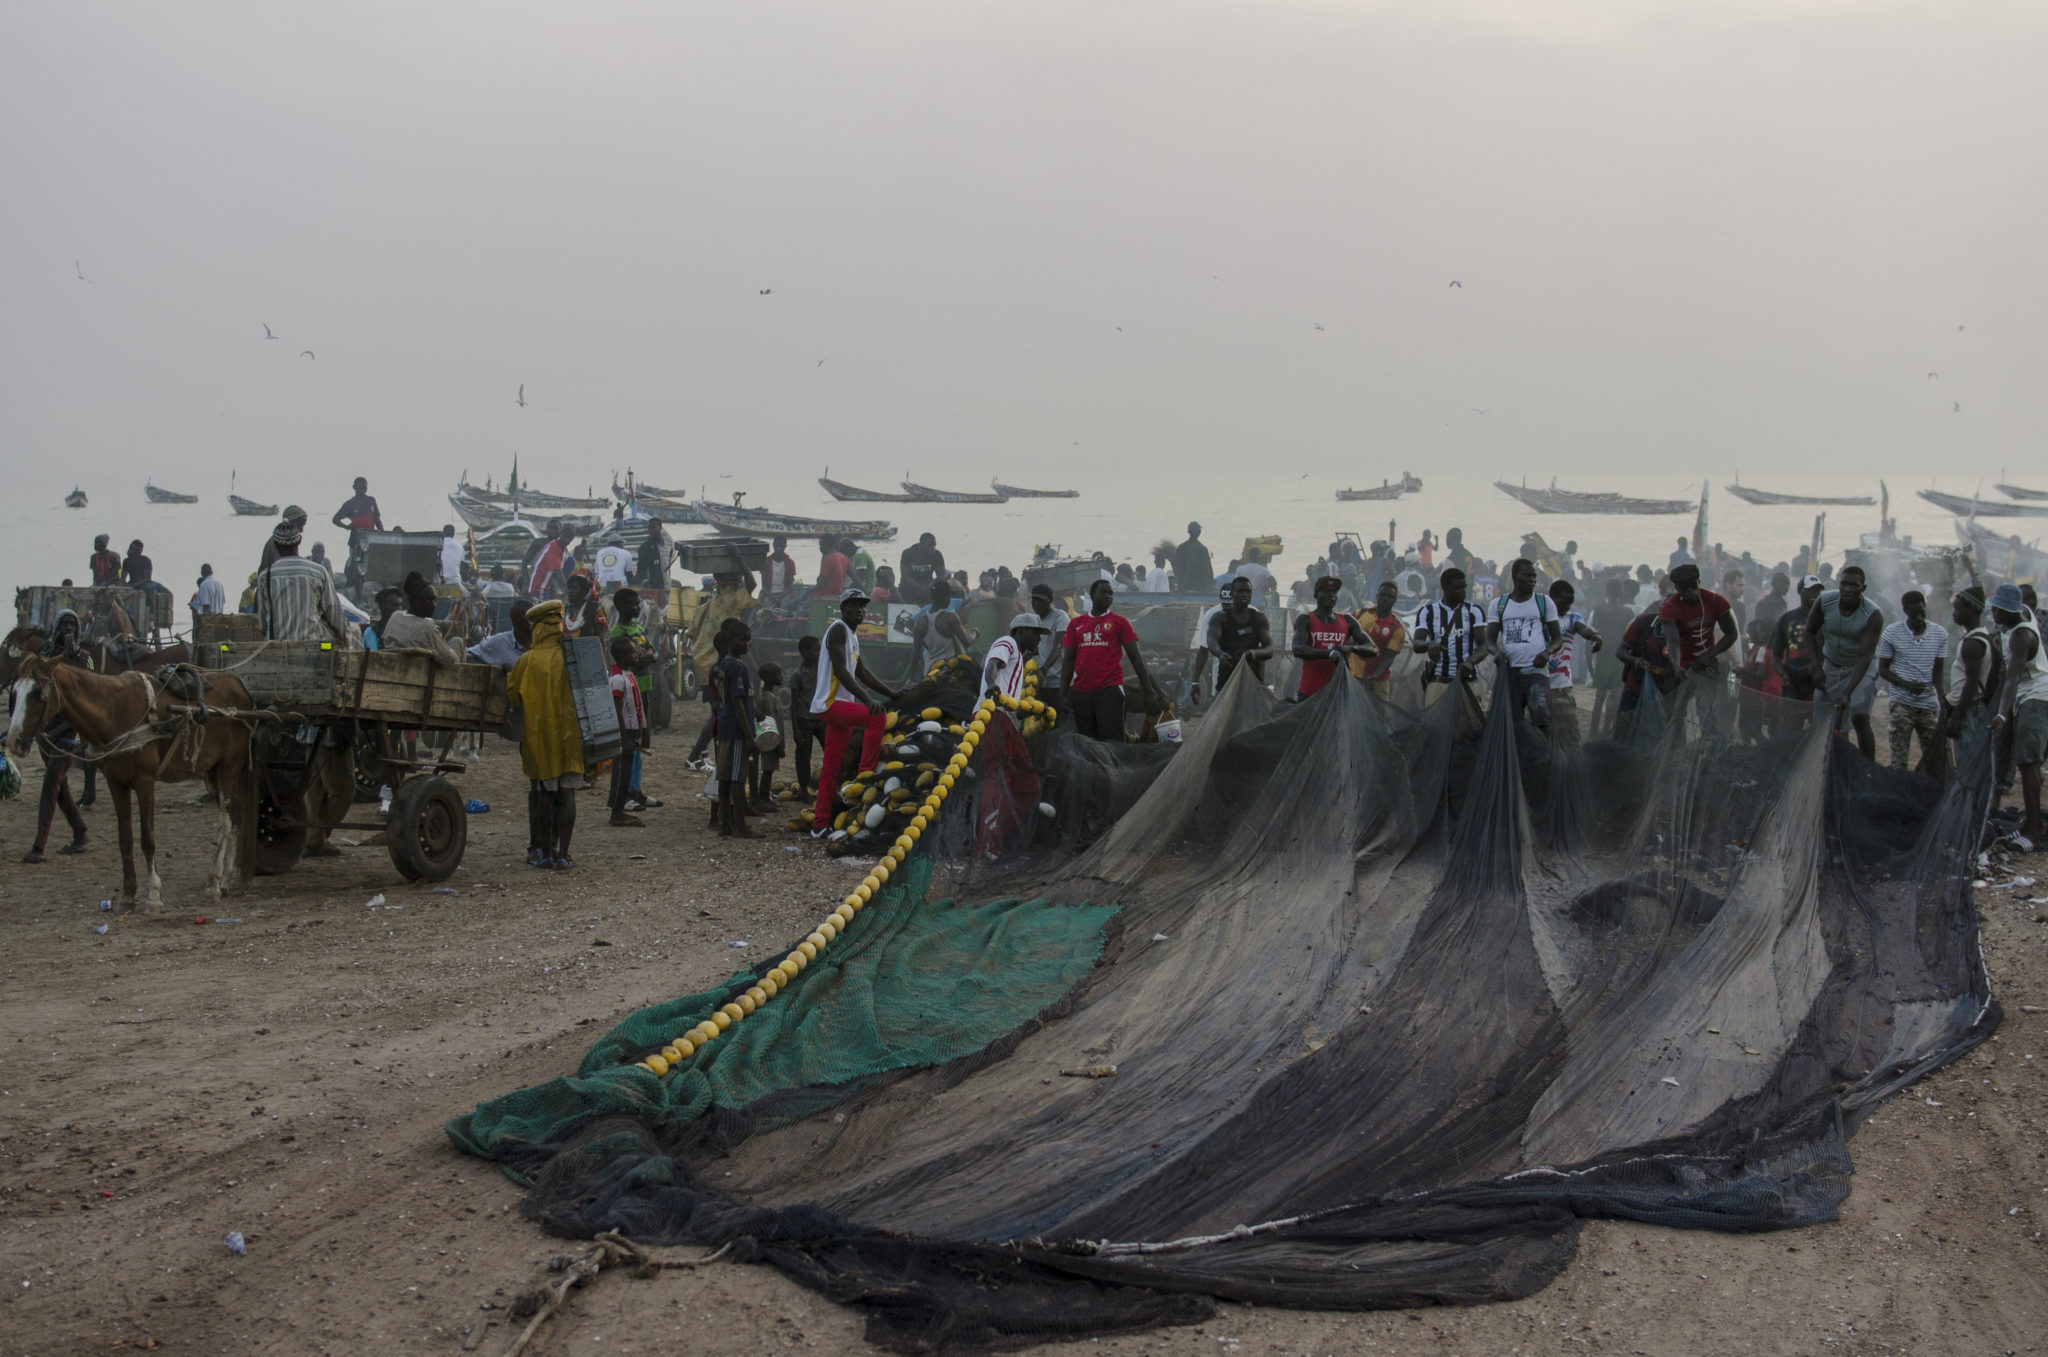 Fischernetze auf dem Fischmarkt Mbour im Senegal